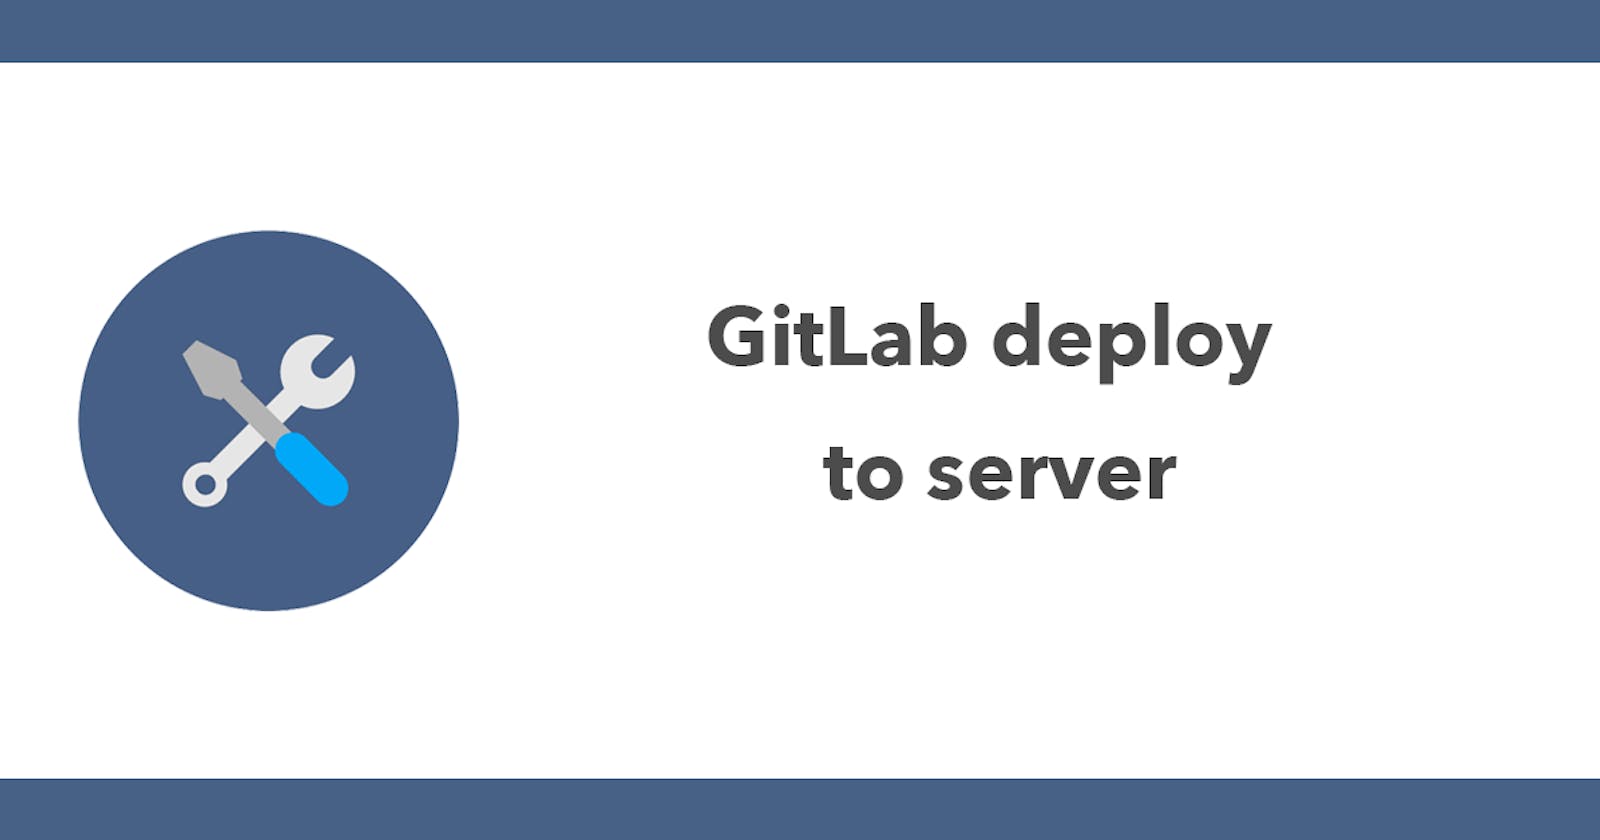 GitLab deploy to server